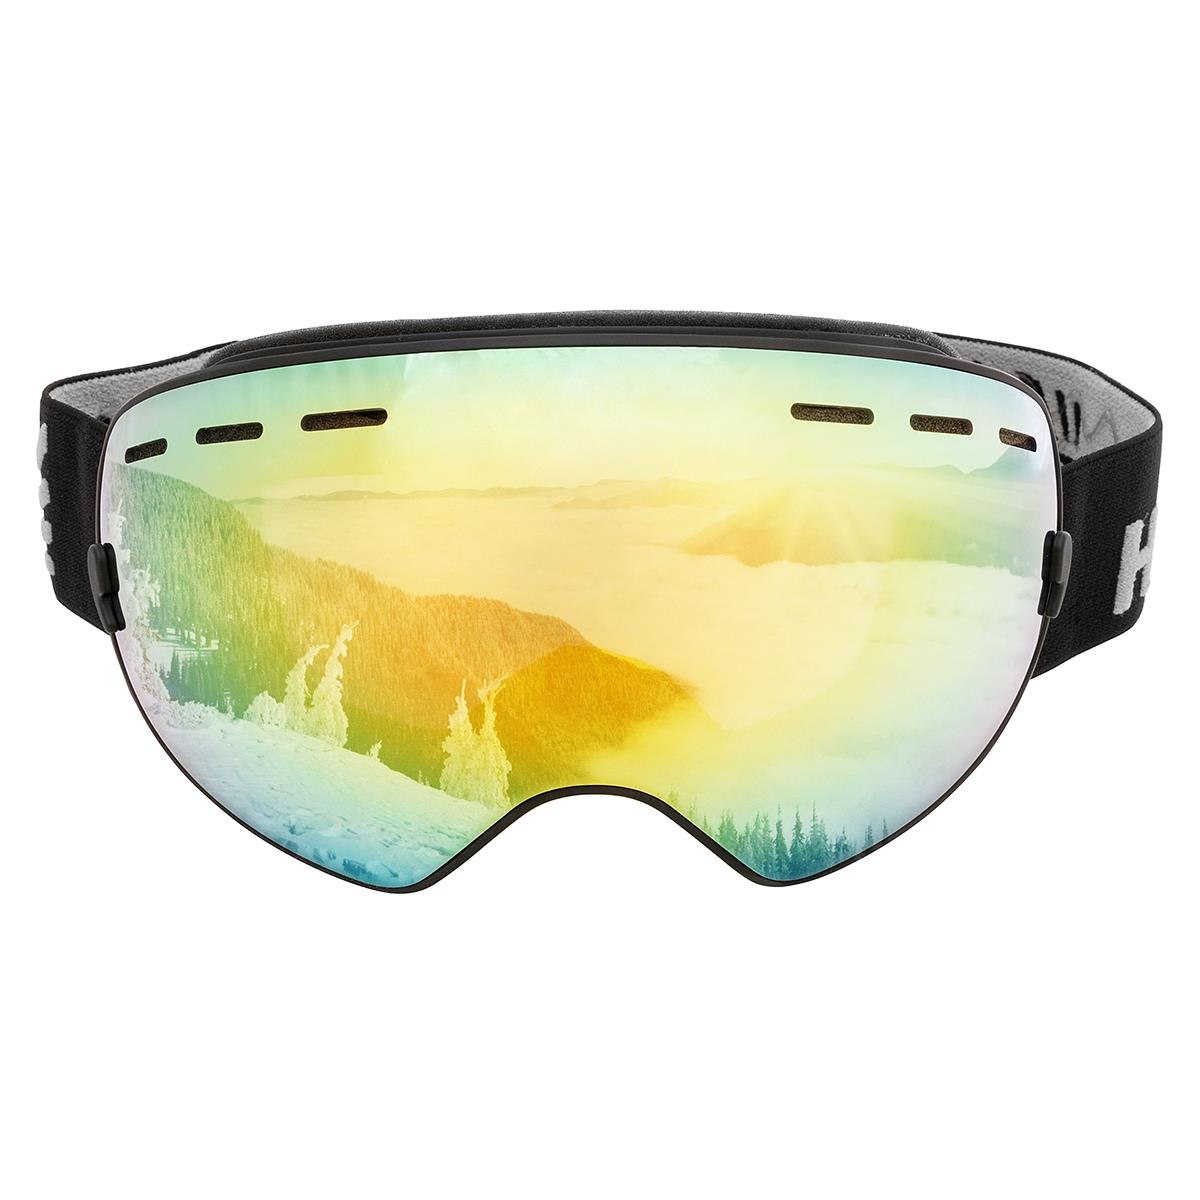 Очки горнолыжные HS-HX-003-1 Helios очки для плавания взрослые uv защита